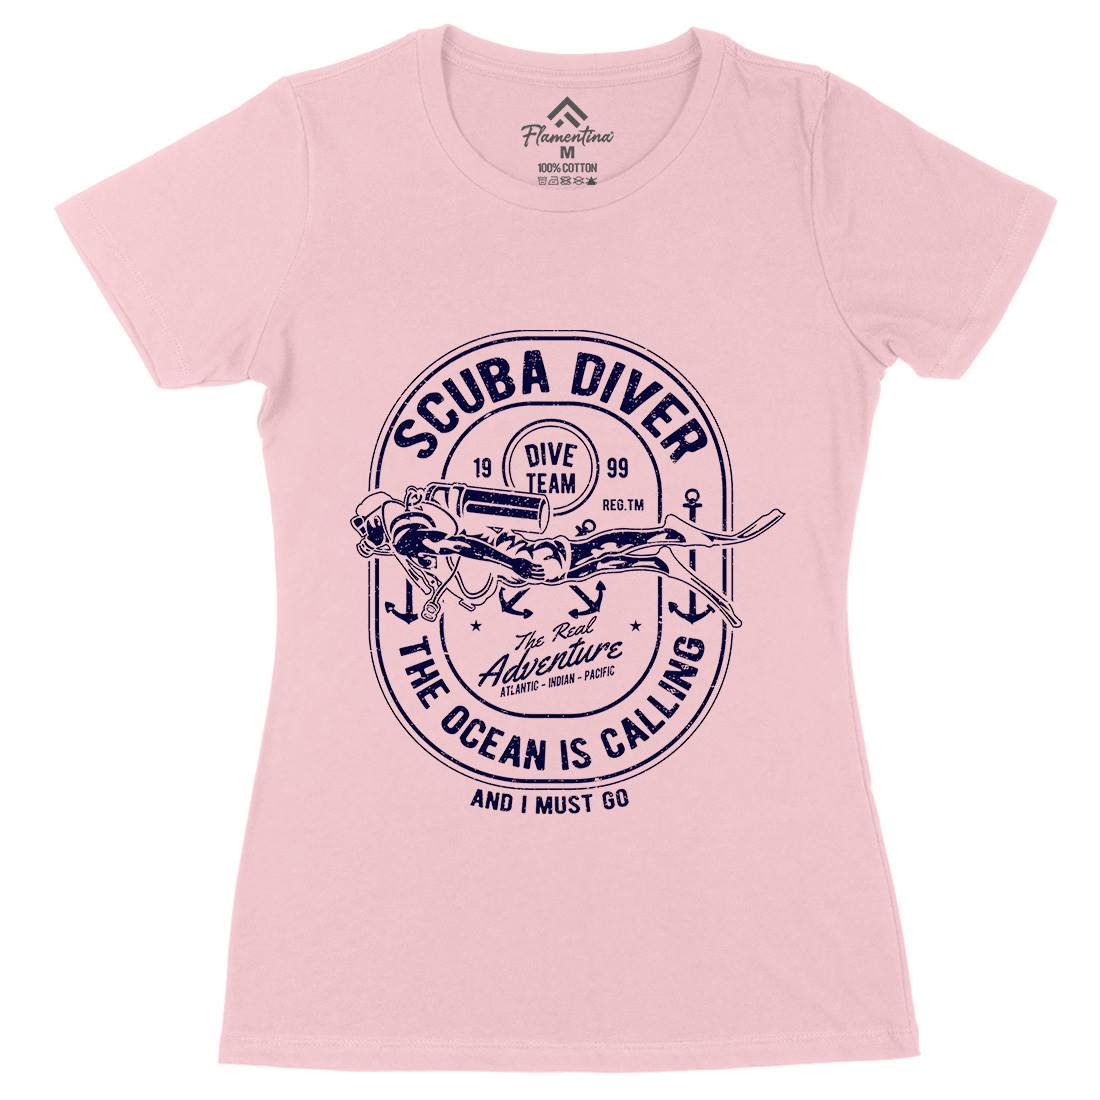 Scuba Diver Womens Organic Crew Neck T-Shirt Navy A138